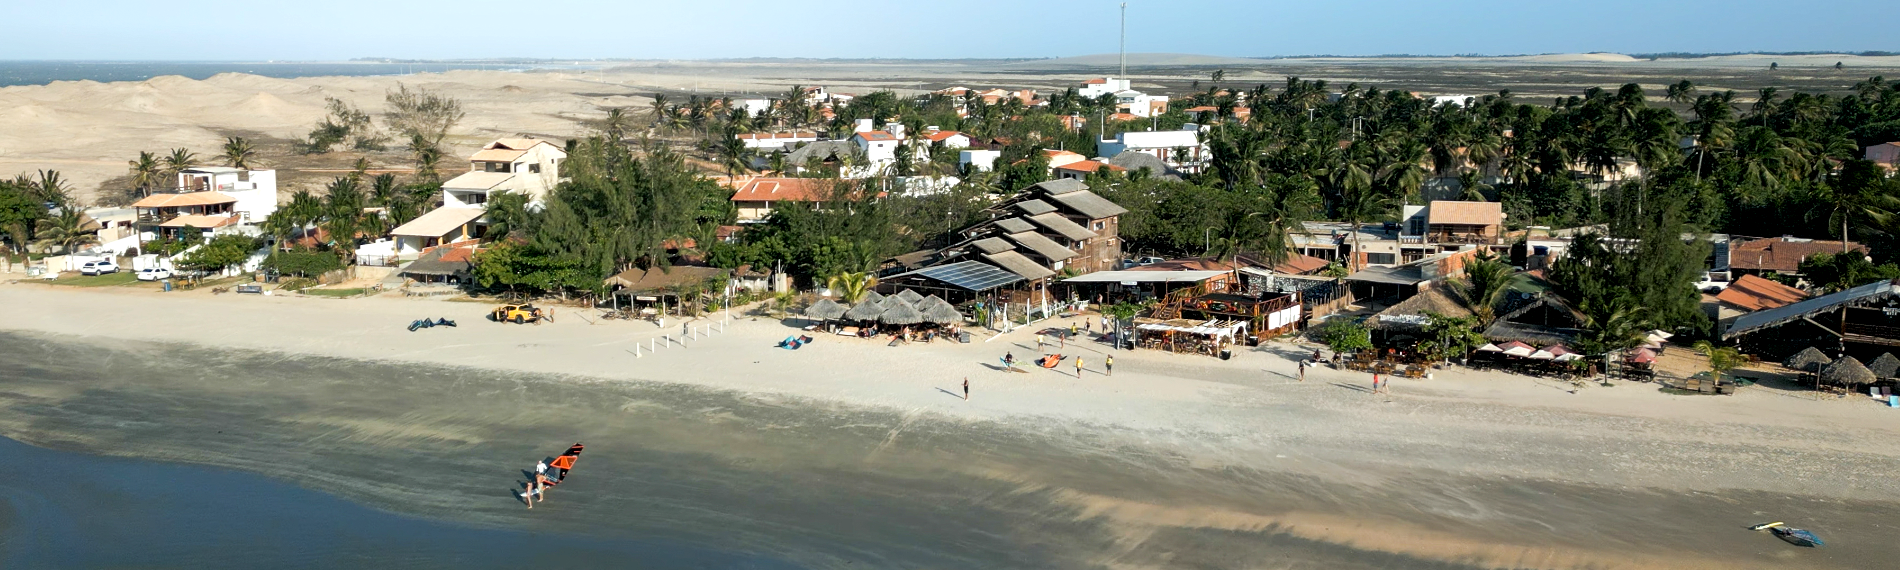 Küstendorf Maceio, Brasilien neben Sanddünen mit Strand und vereinzelten Besuchern.